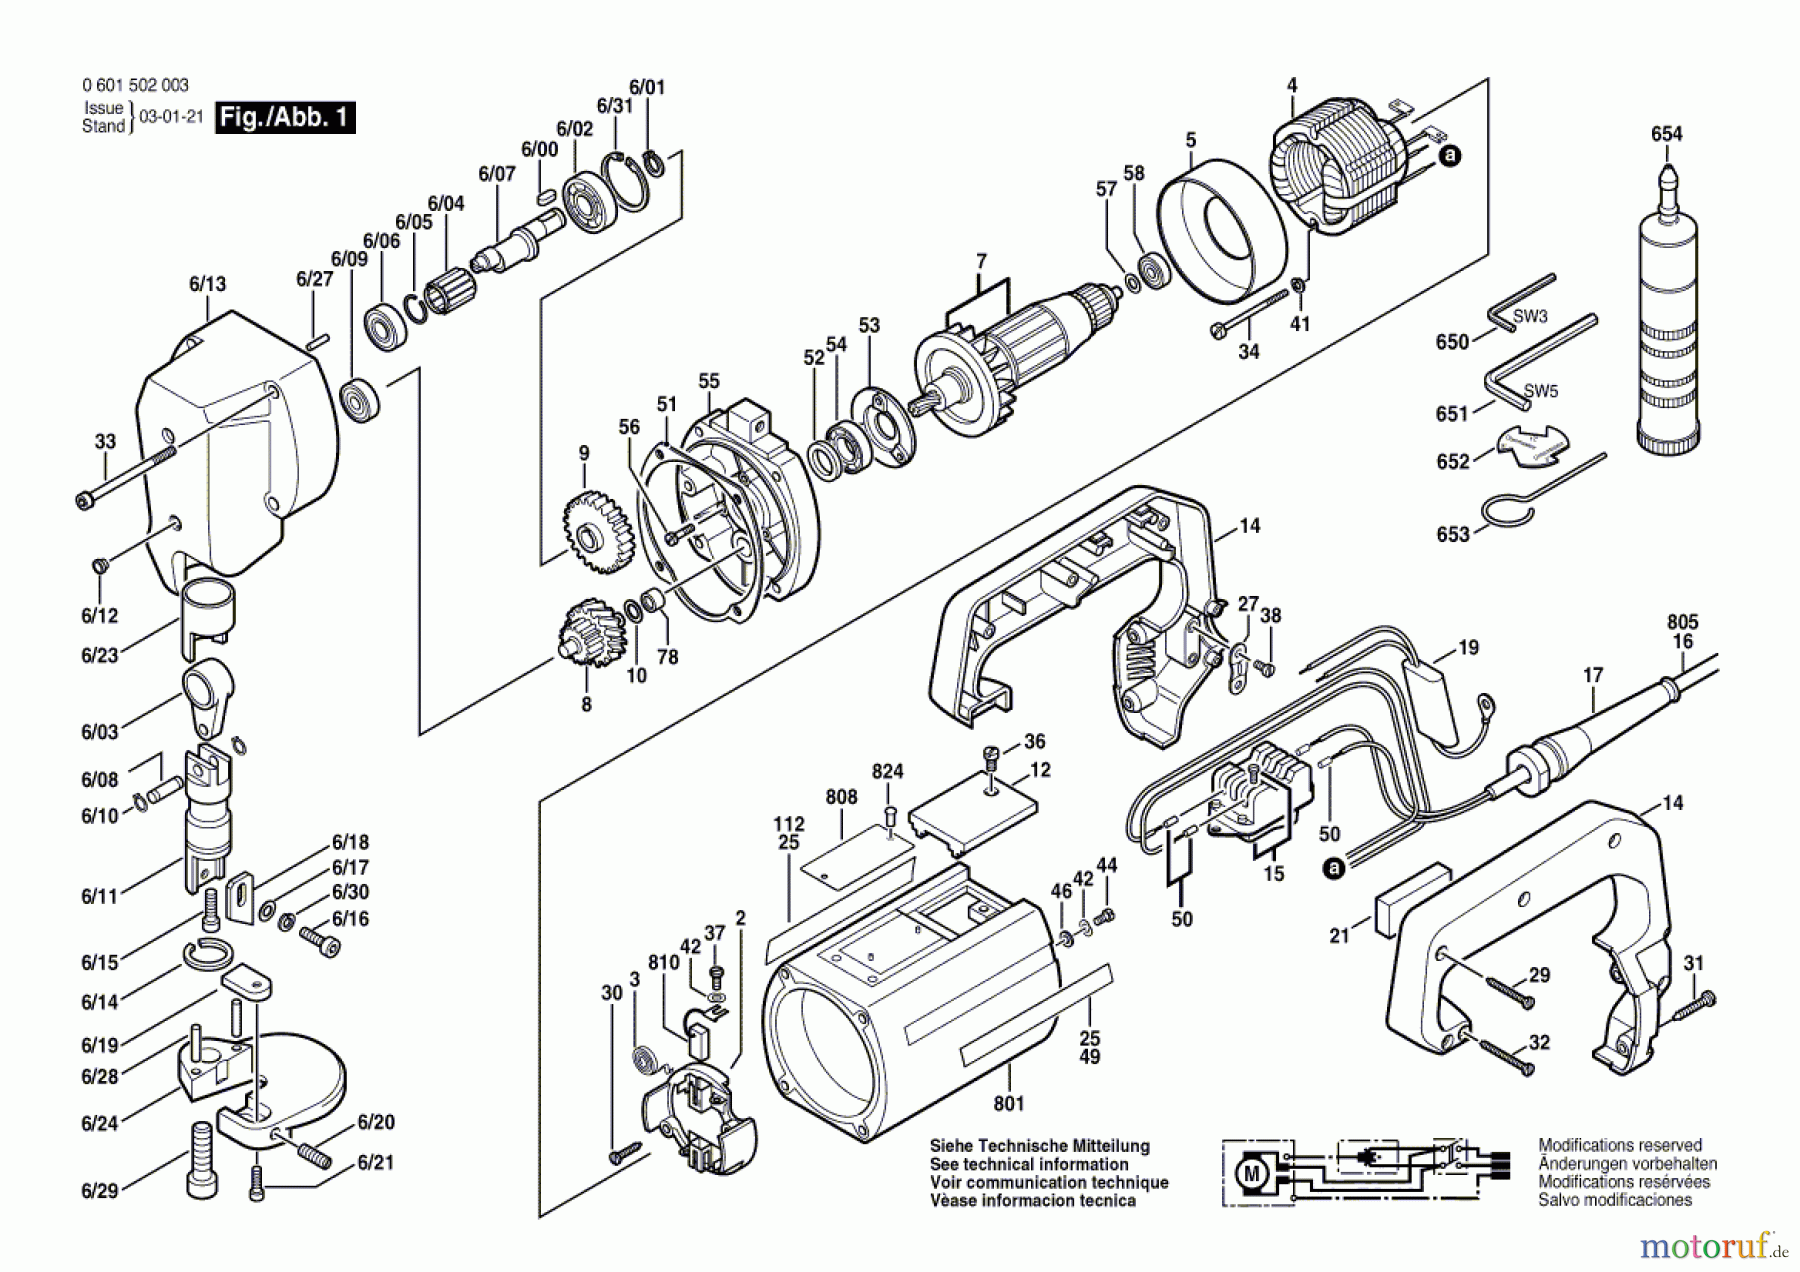  Bosch Werkzeug Blechschere ---- Seite 1